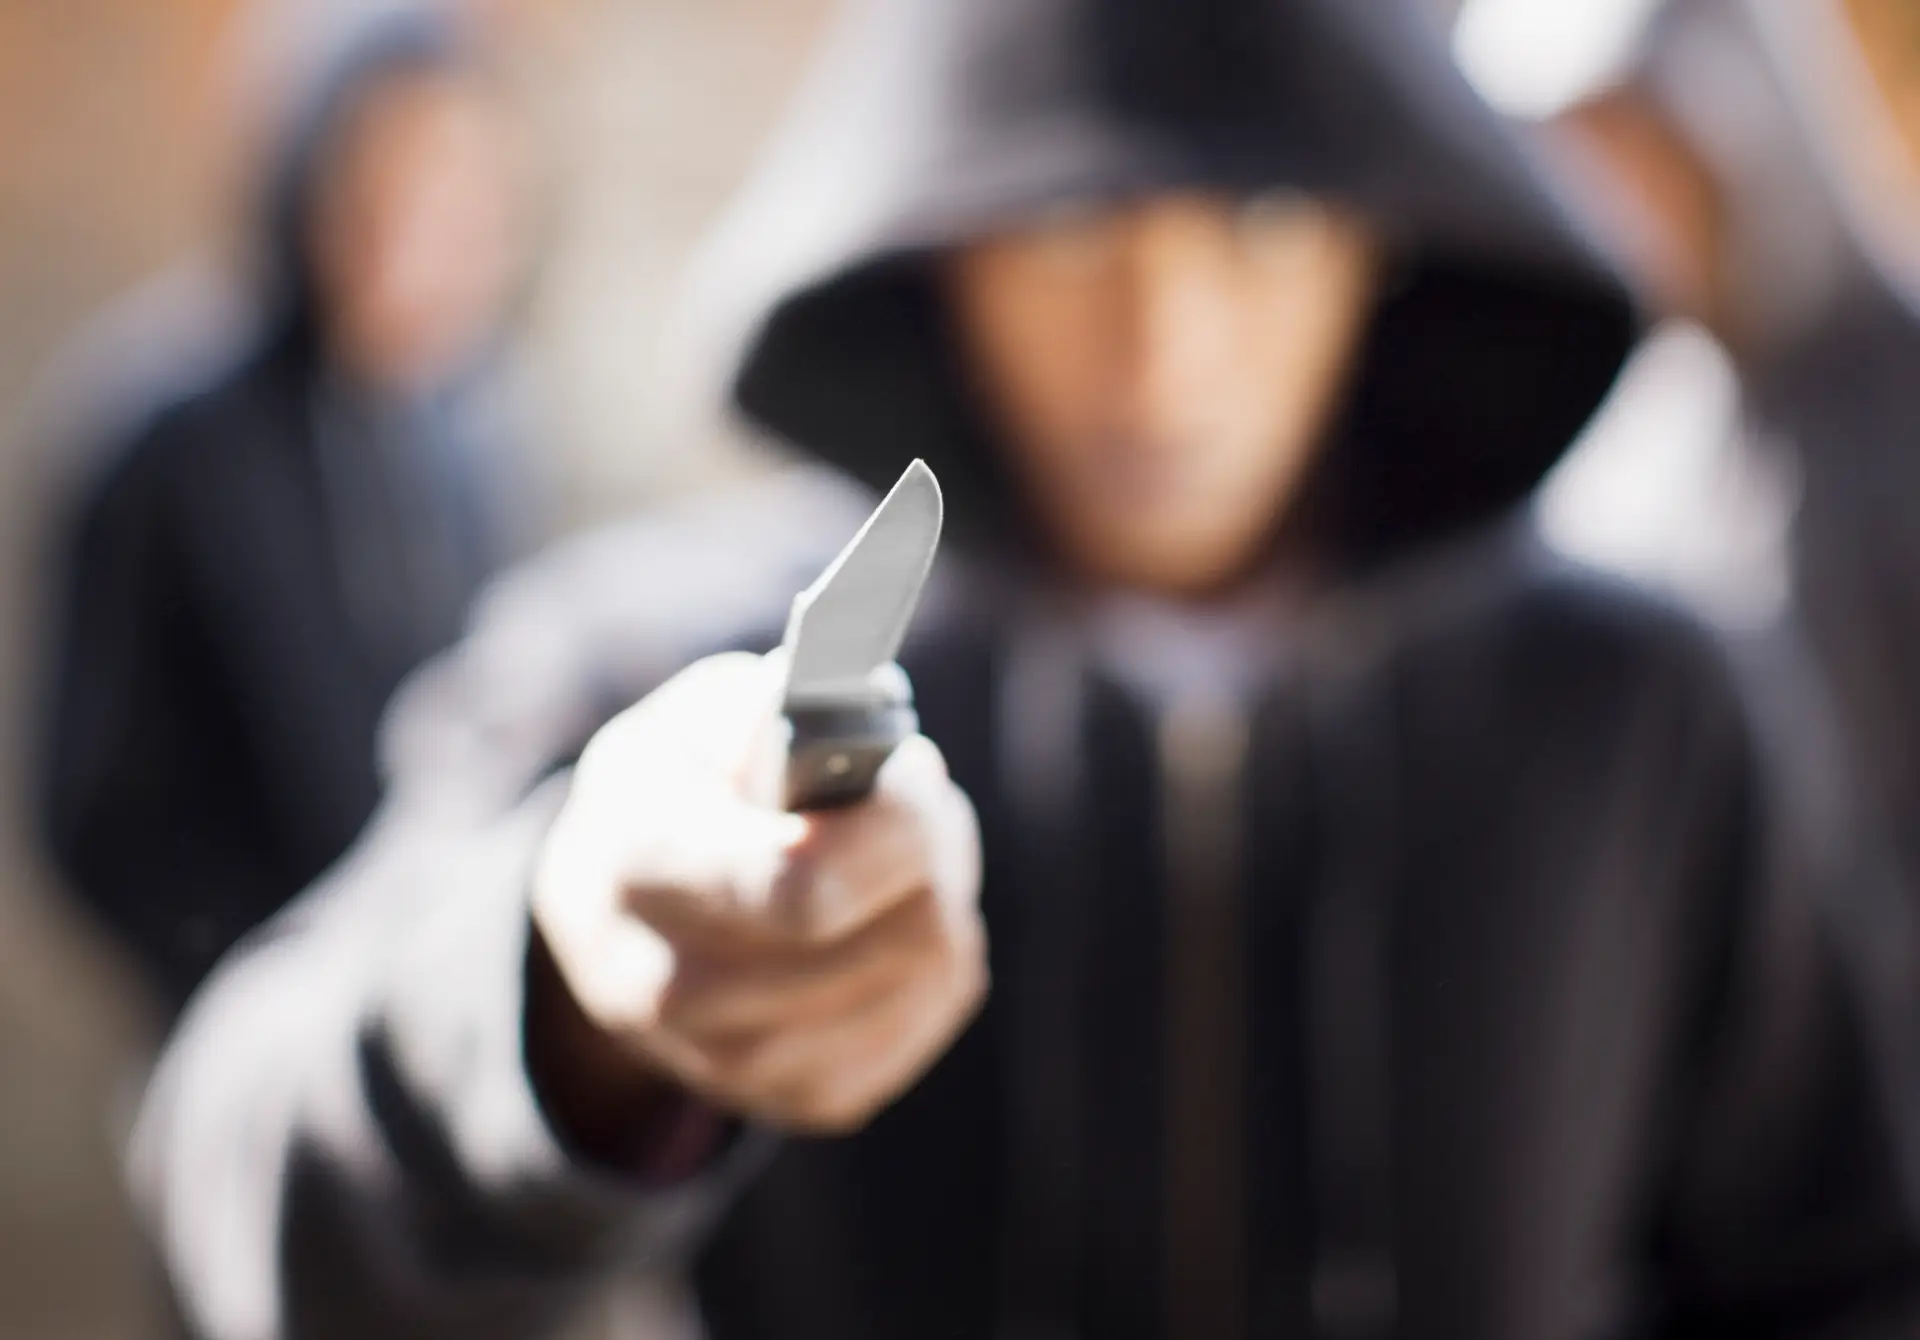 Ligações de jovens a grupos criminosos aumentaram, Governo promete agir em “duas frentes”